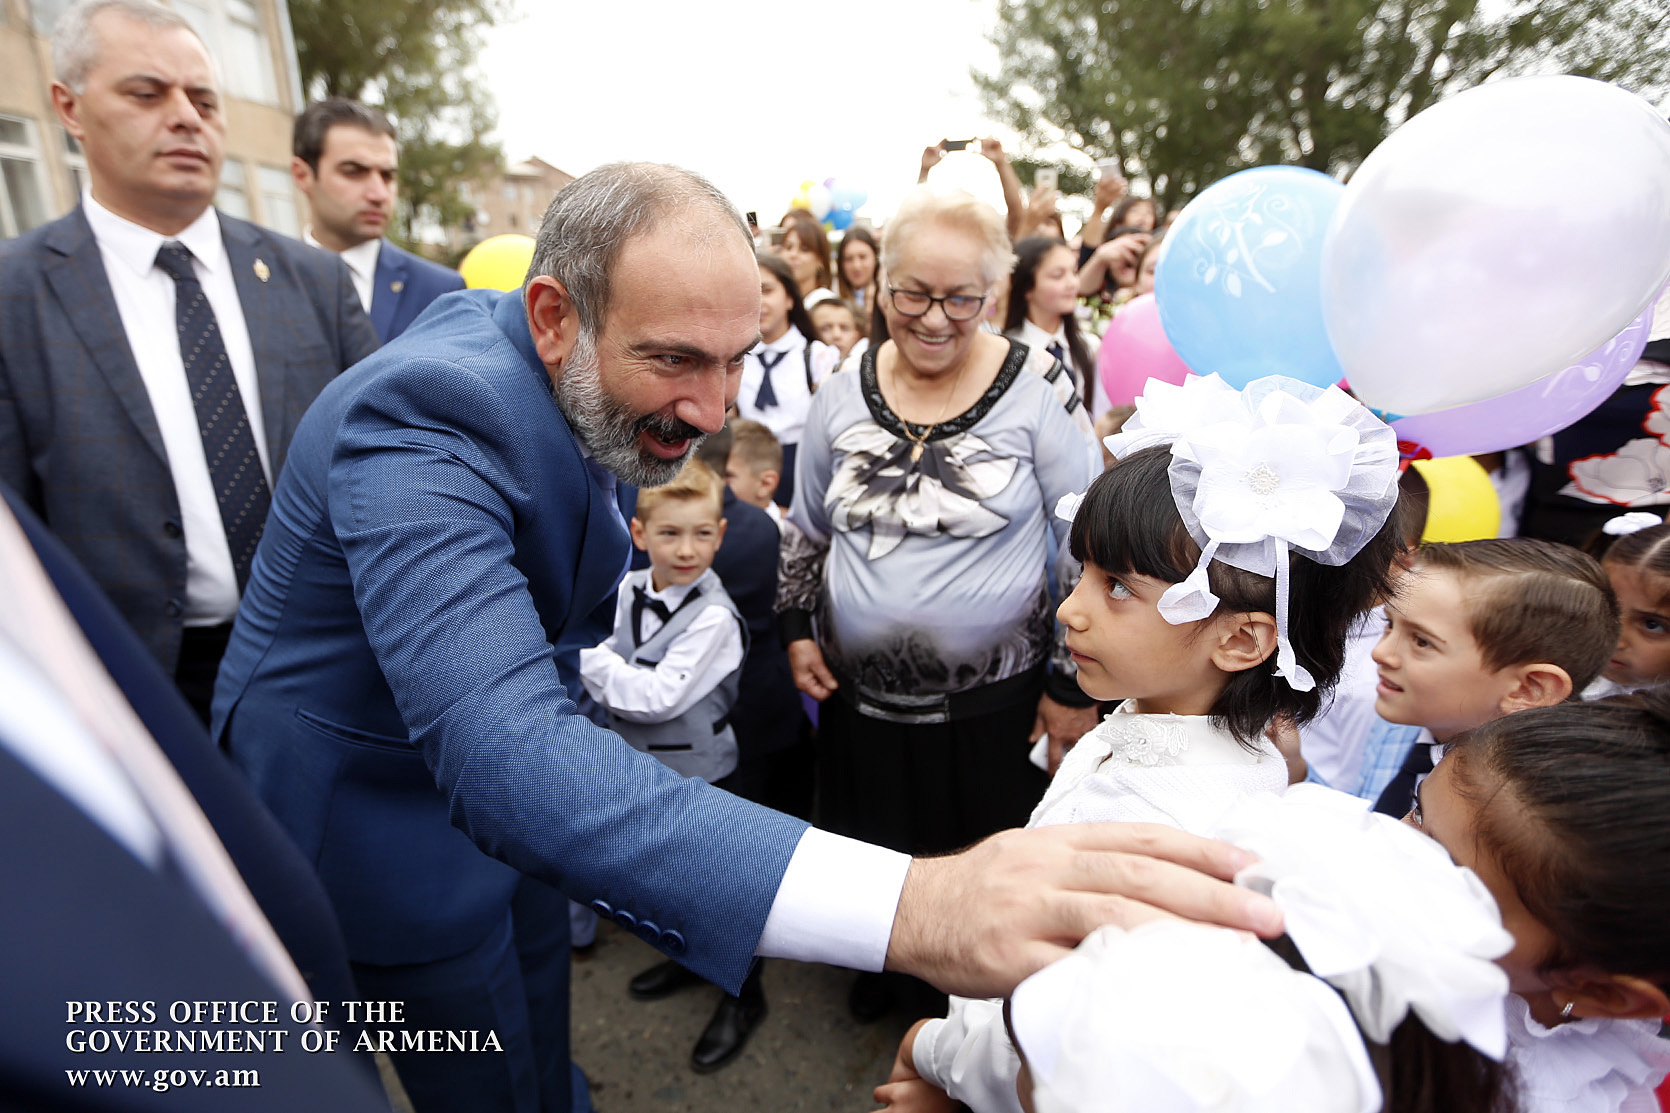 On September 1, PM visited basic school N3 in Sevan